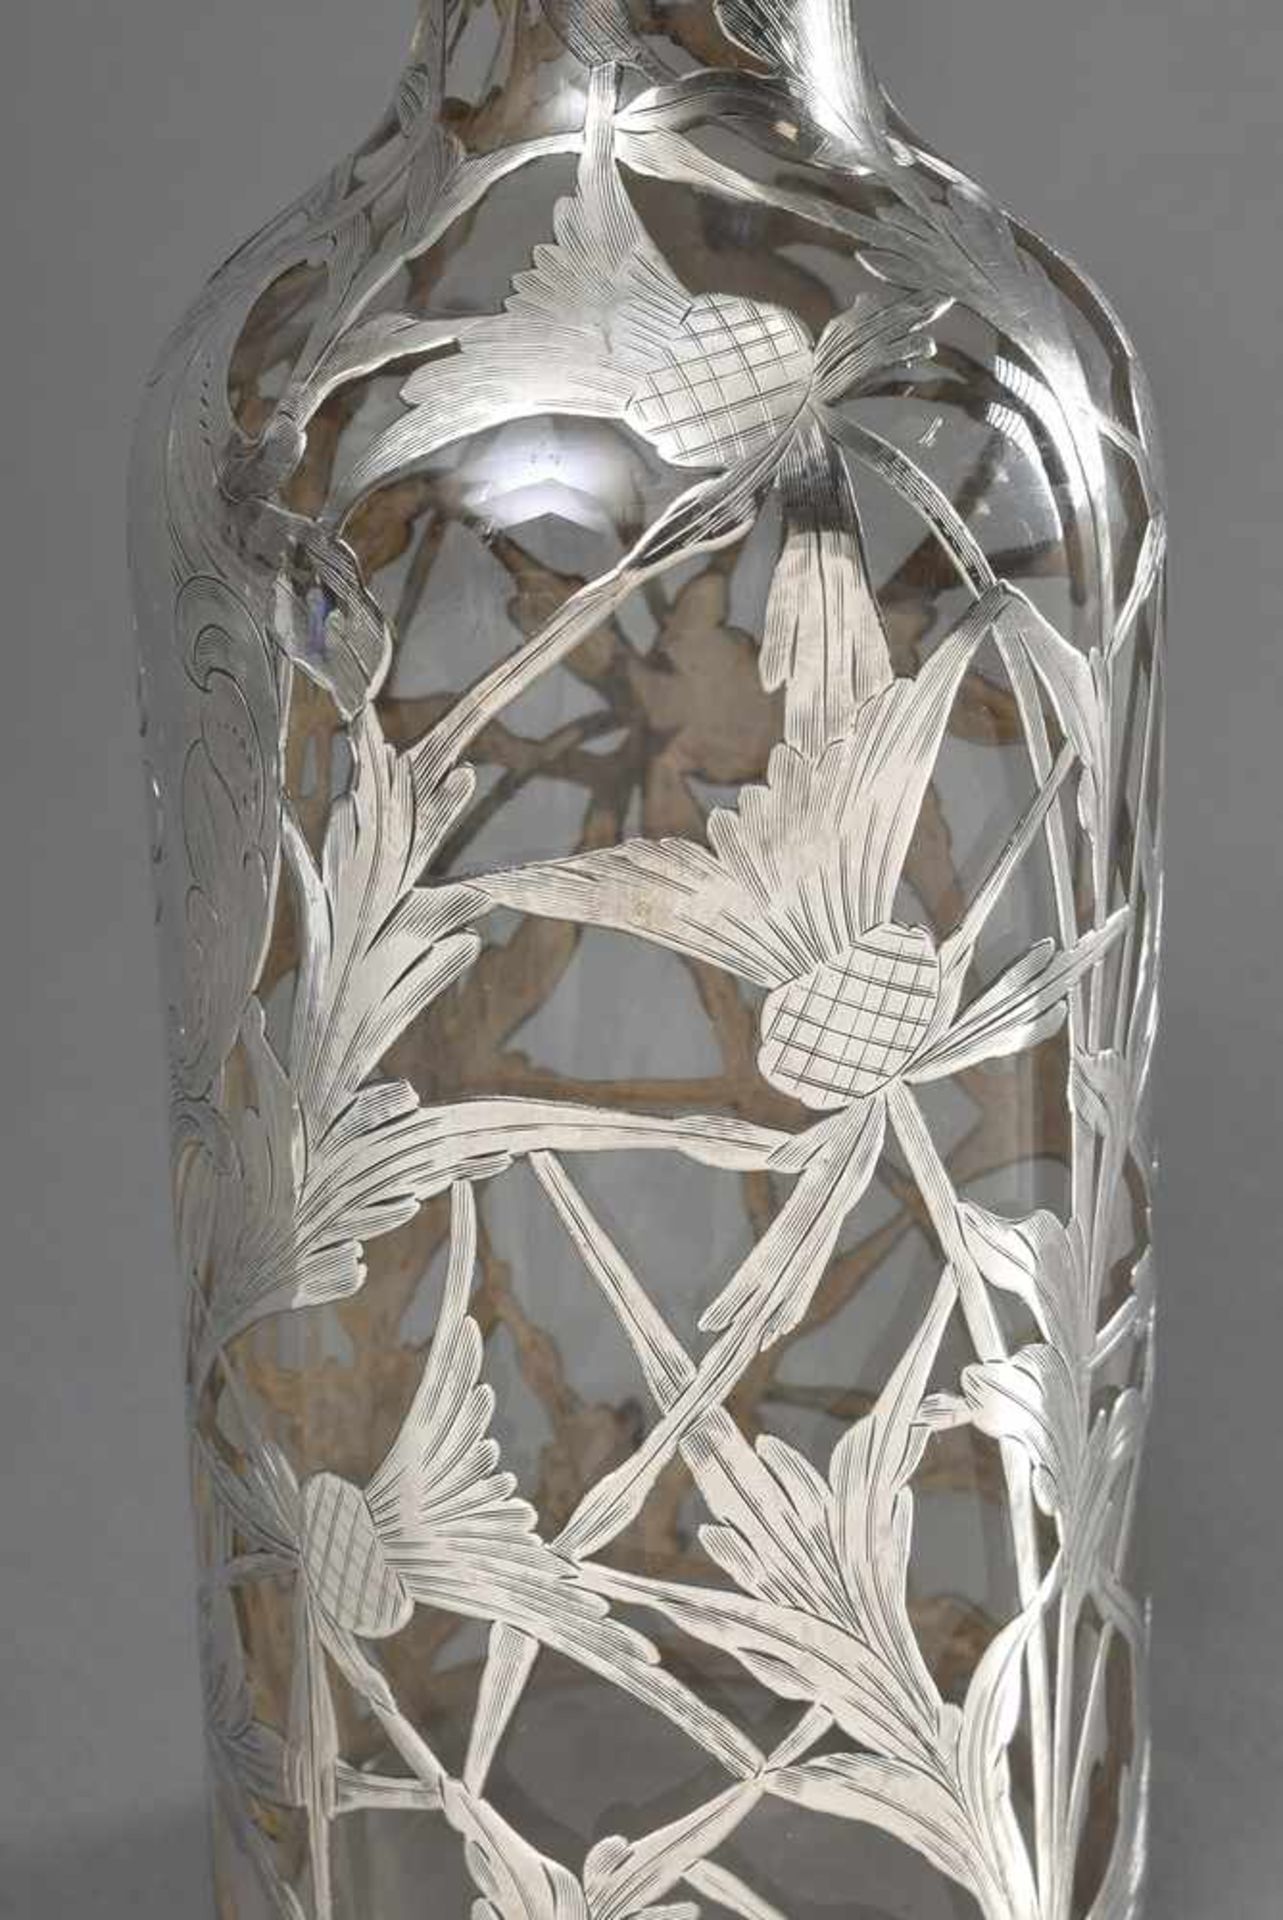 Karaffe in Flaschenform mit floralem Silber Overlay "Disteln" und Monogramm "CHW", H. 30cm, - Bild 2 aus 5